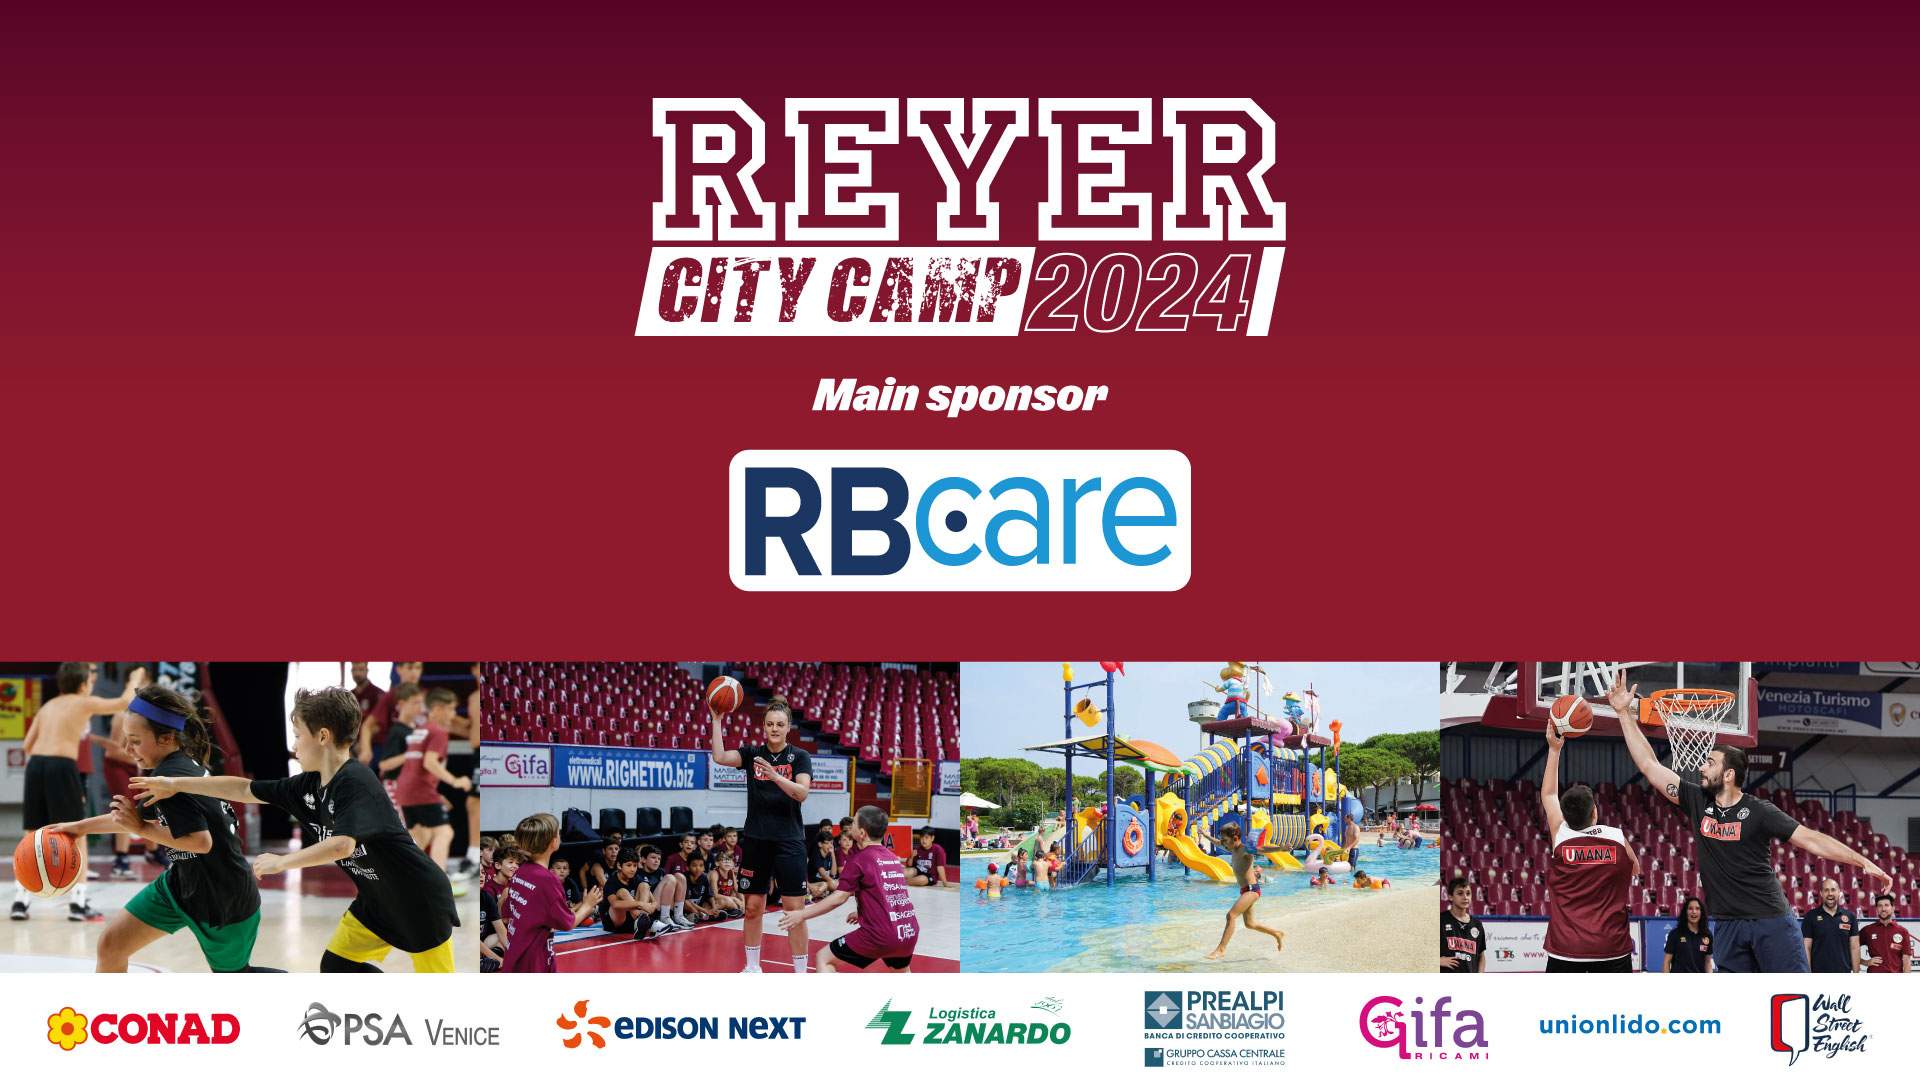 Estate di basket e divertimento con il Reyer City Camp 2024! In collaborazione con il Main Sponsor RBCare, l’Umana Reyer organizza il camp estivo 2024 dedicato alle giovani leonesse e ai giovani leoni.